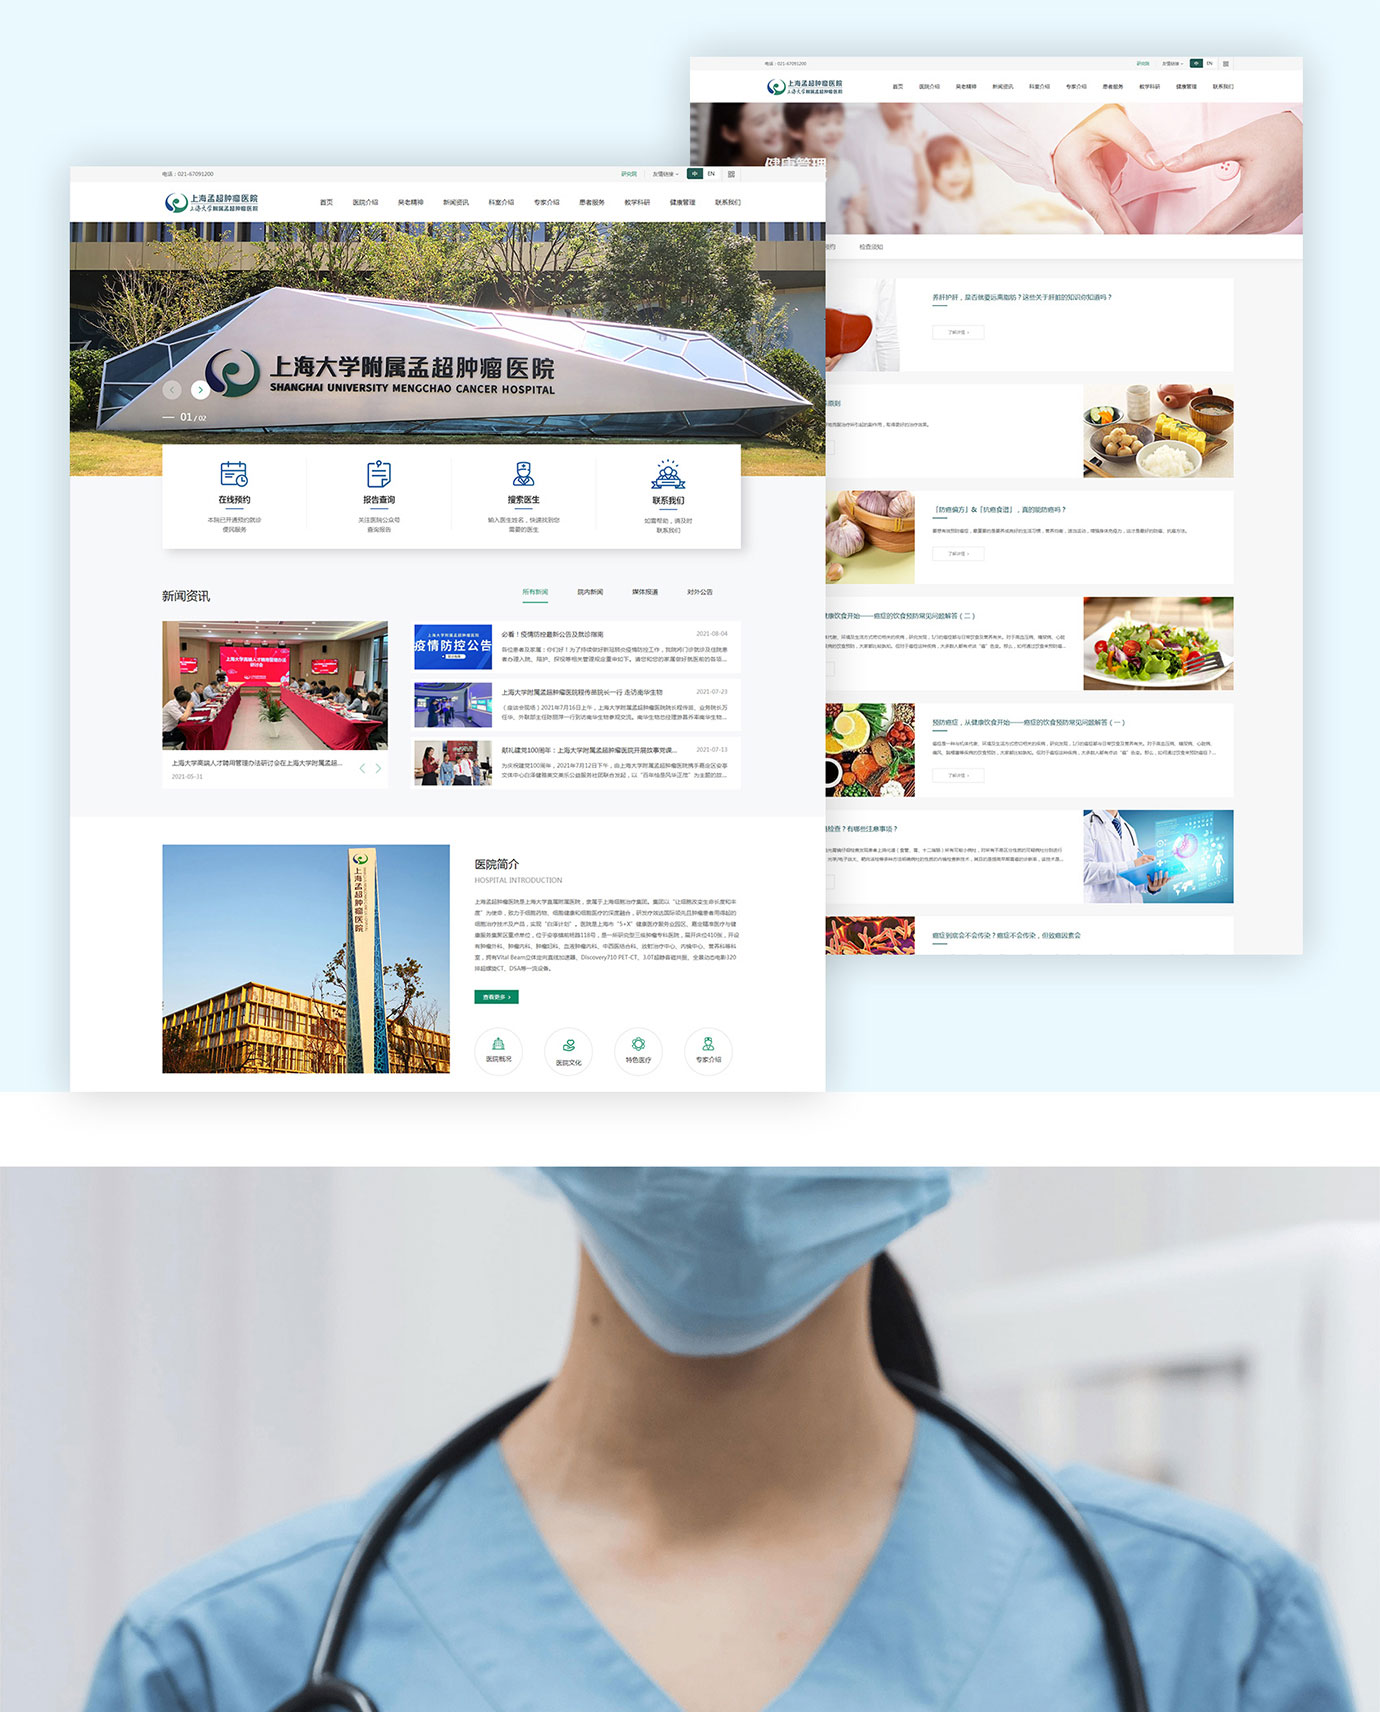 上海大学附属孟超肿瘤医院项目图片